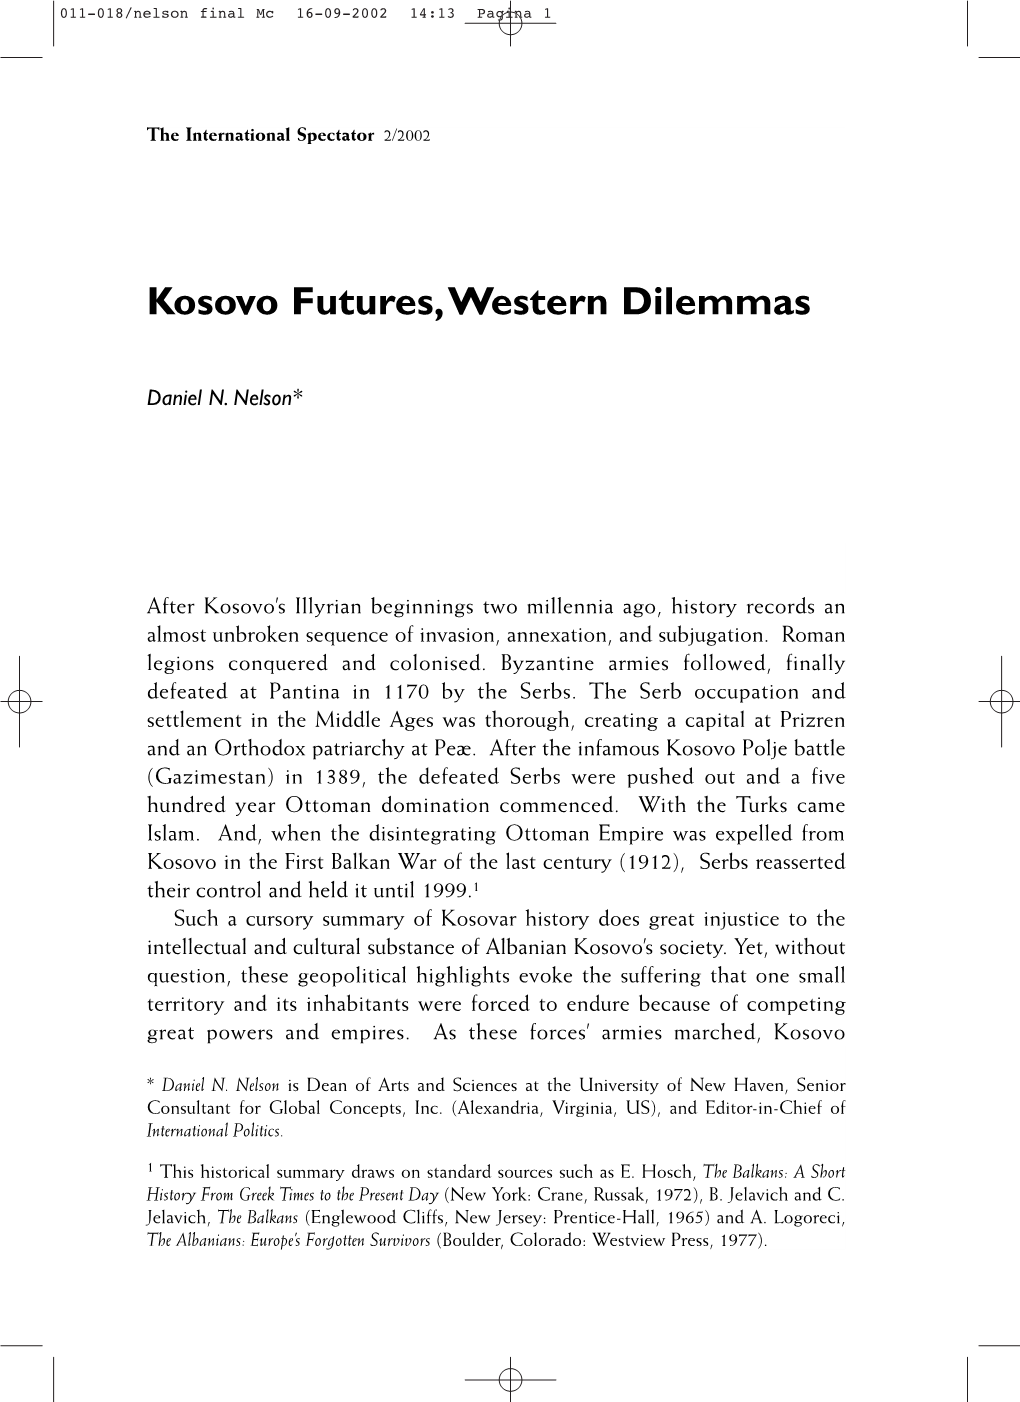 Kosovo Futures, Western Dilemmas